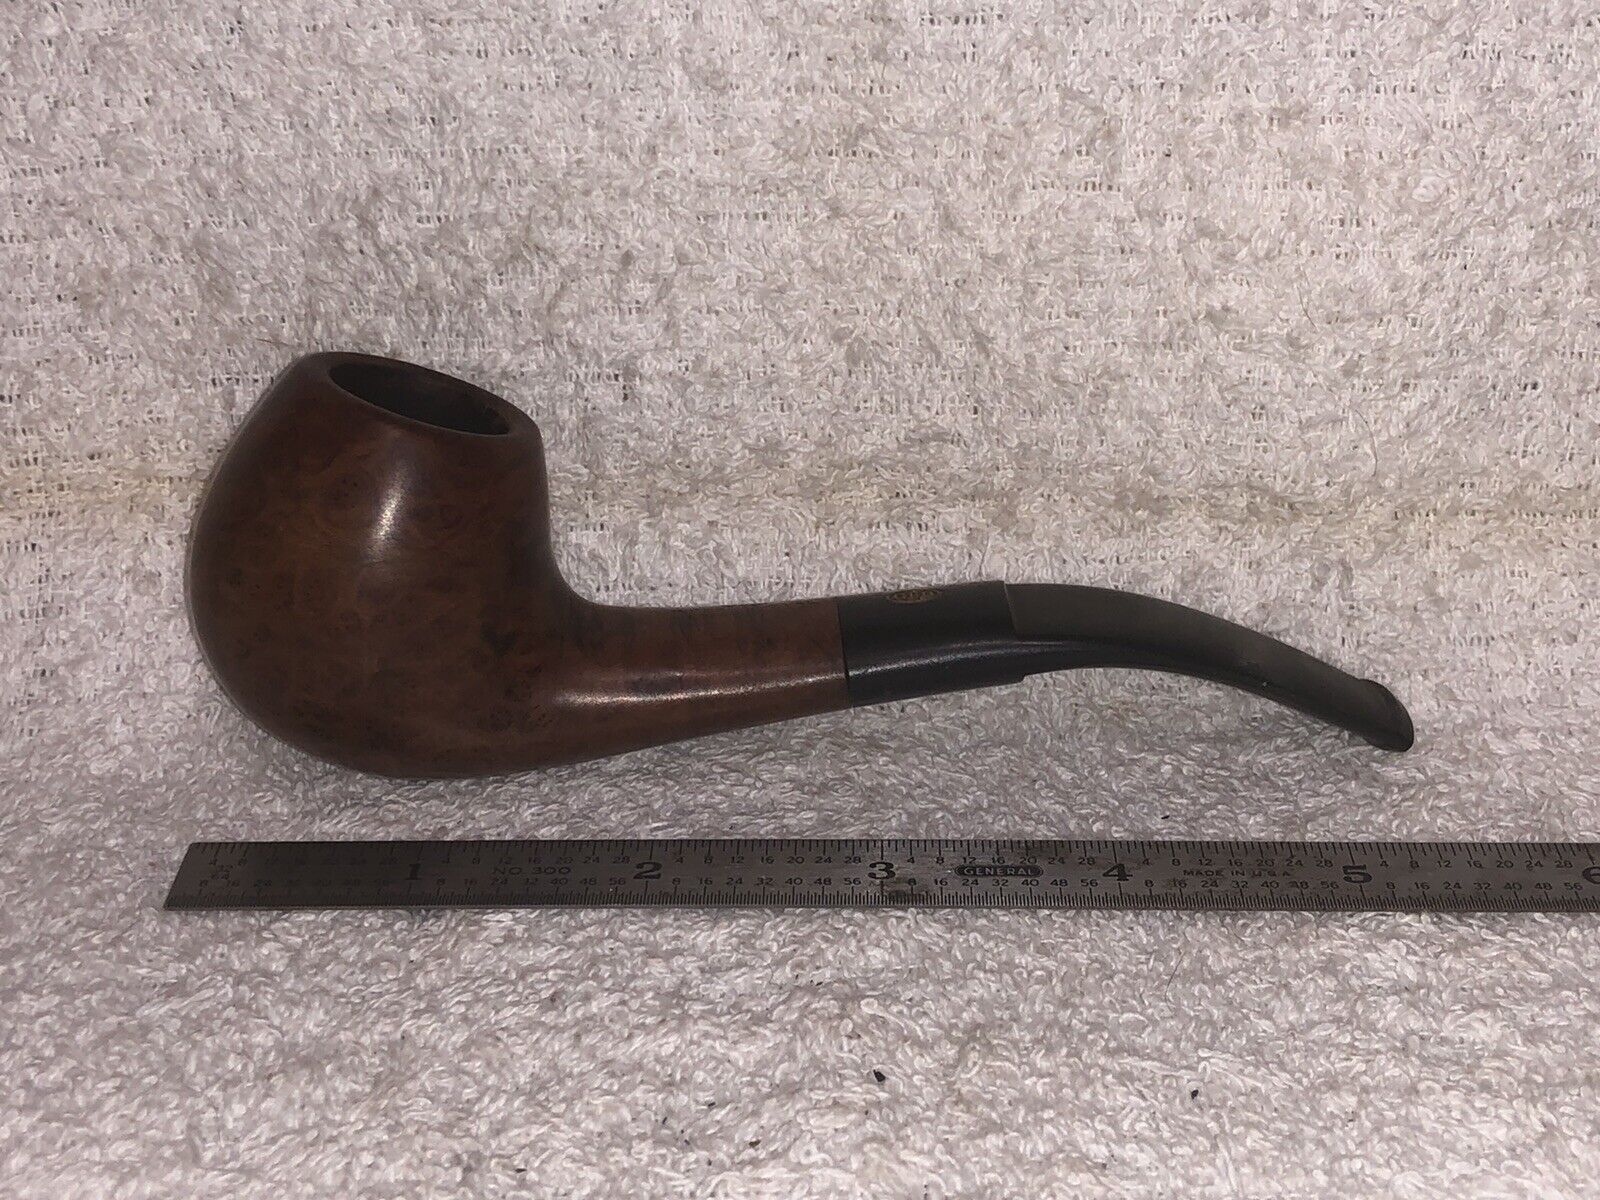 1913, GBD International￼￼,￼ Tobacco Smoking Pipe, ￼Estate￼, 00145